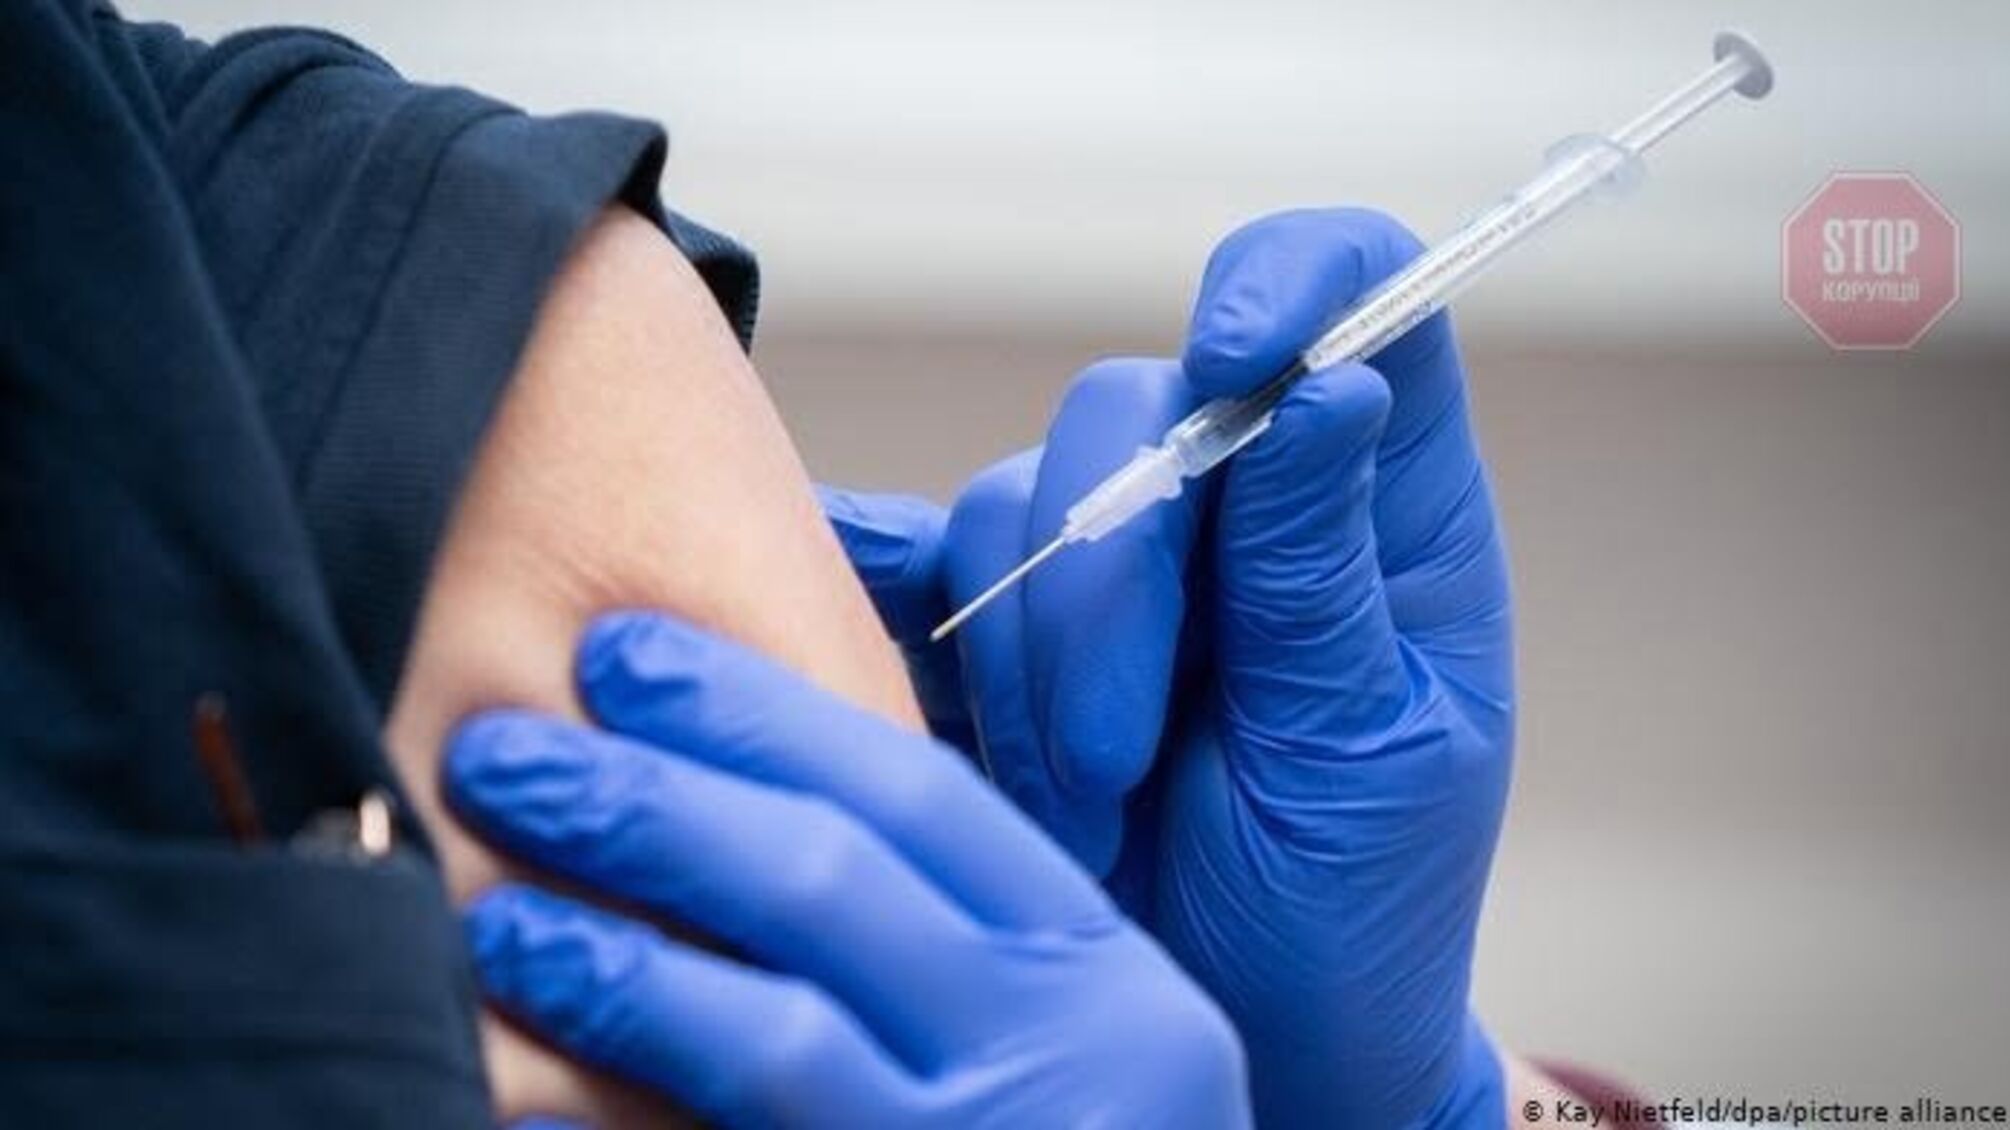 В Україні майже 400 тисяч людей отримали дві дози вакцини 